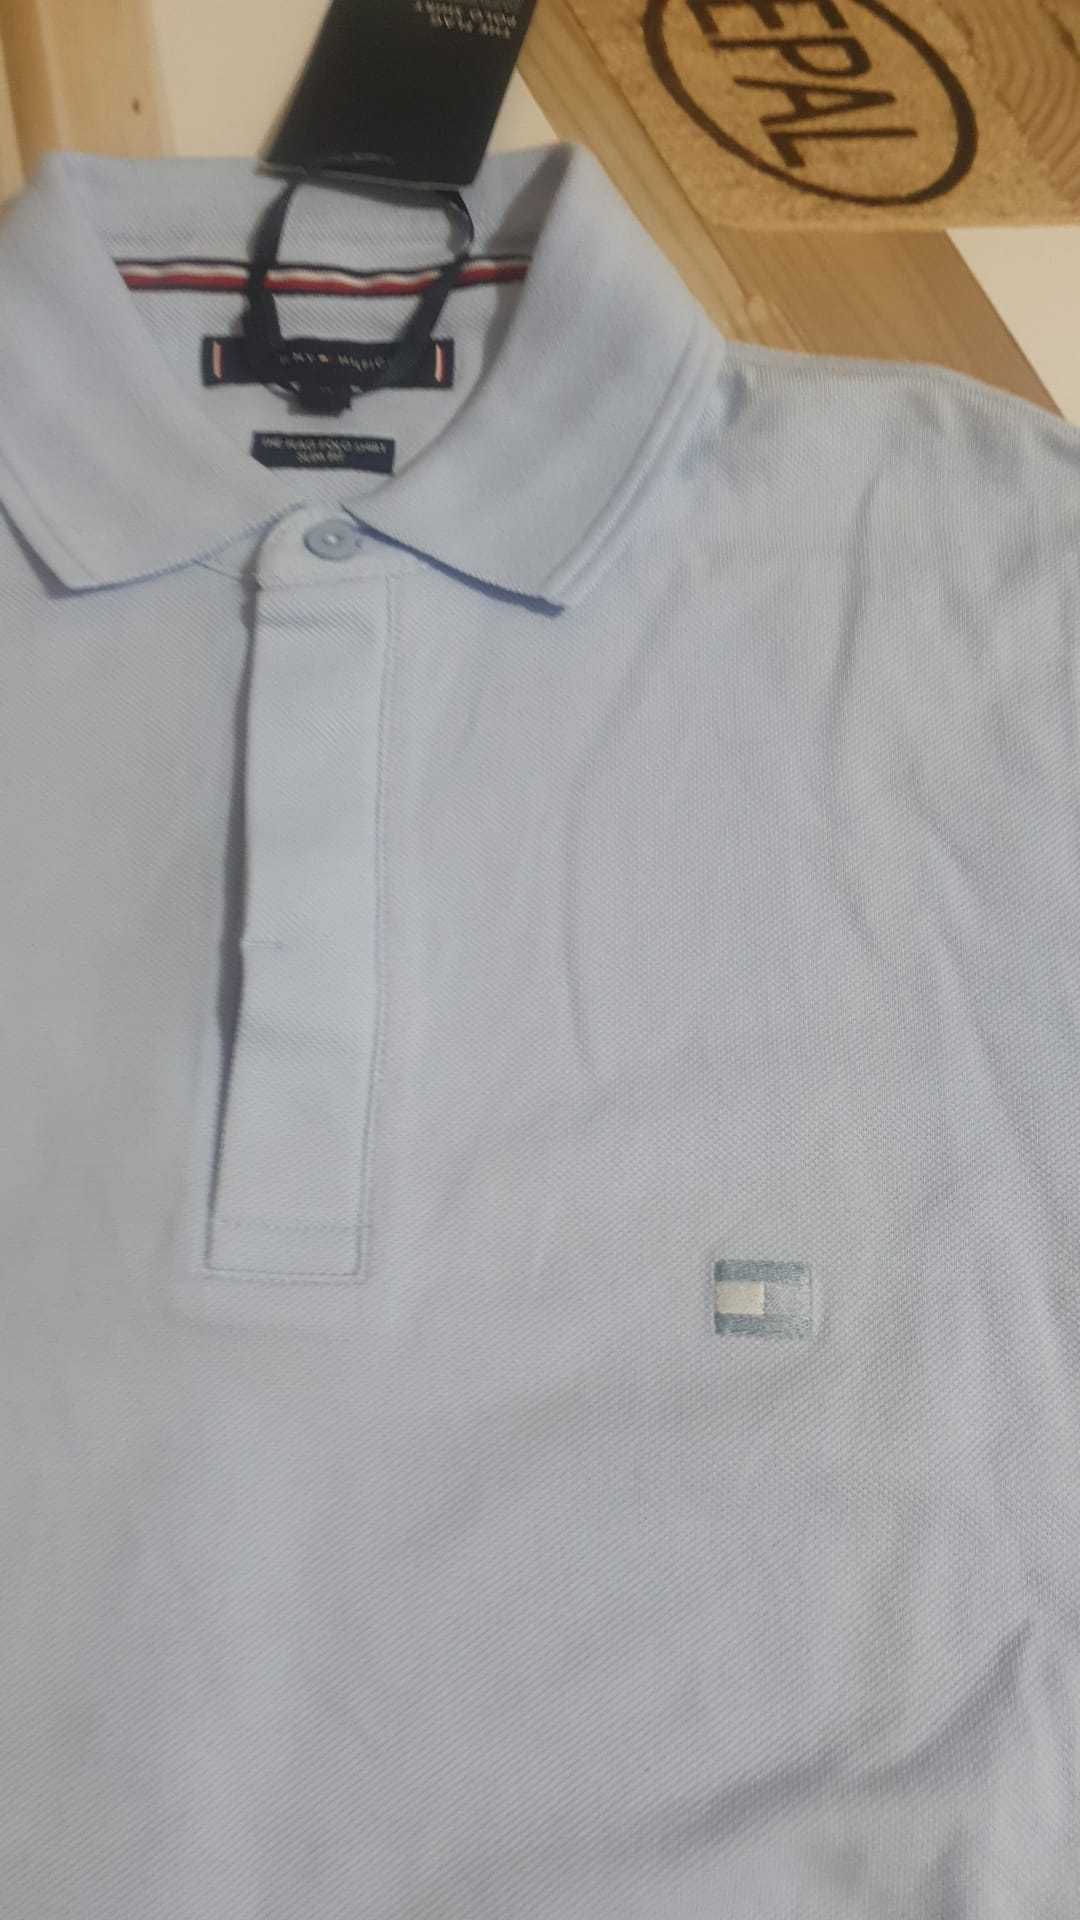 Vand tricou barbat Tommy Hilfiger masura M original nou cu eticheta.